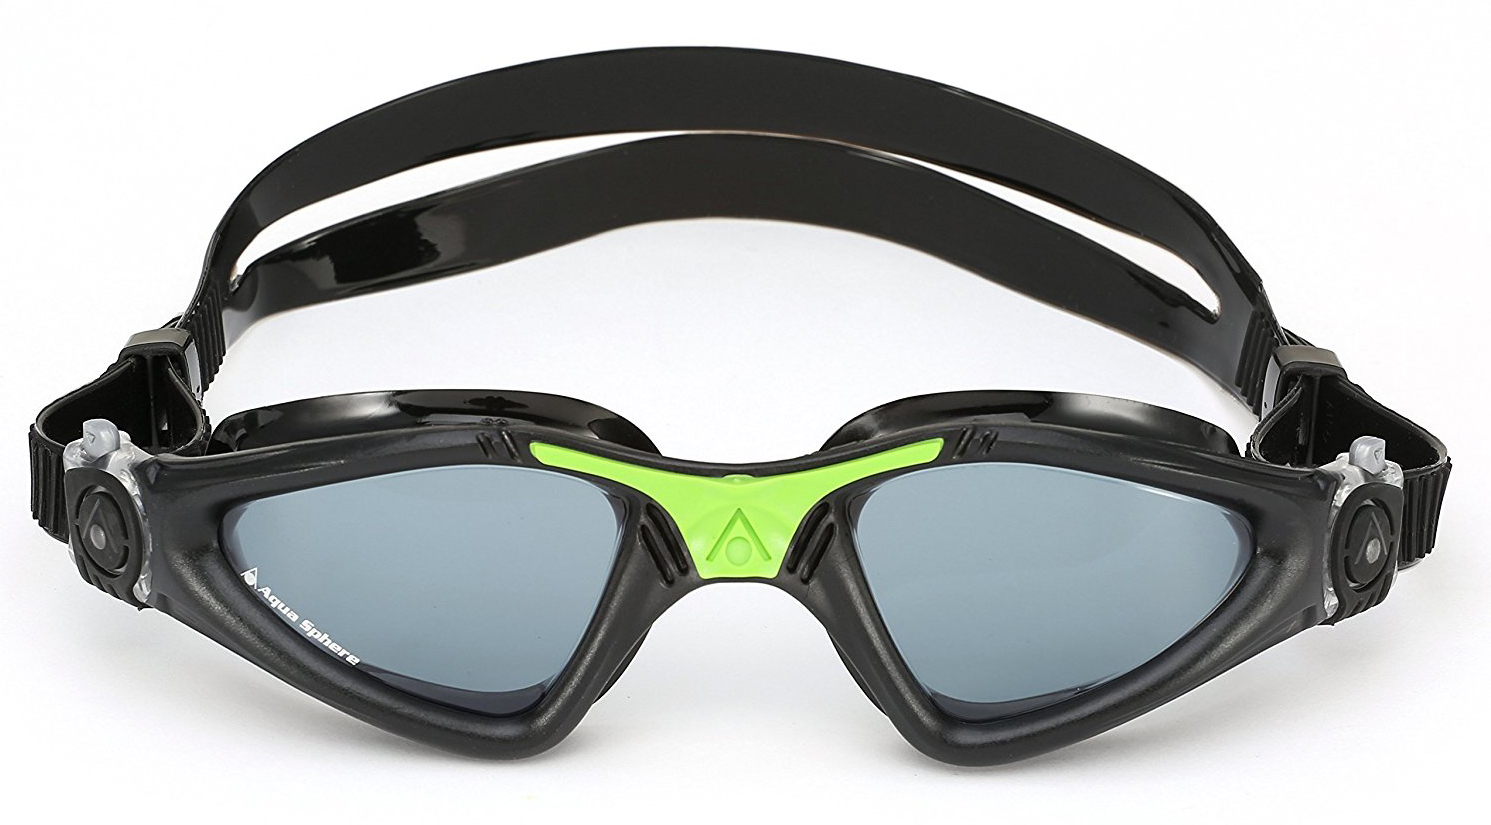 Aqua Sphere Mako Regular Tinted Dark Lens Adult Swimming Goggles 